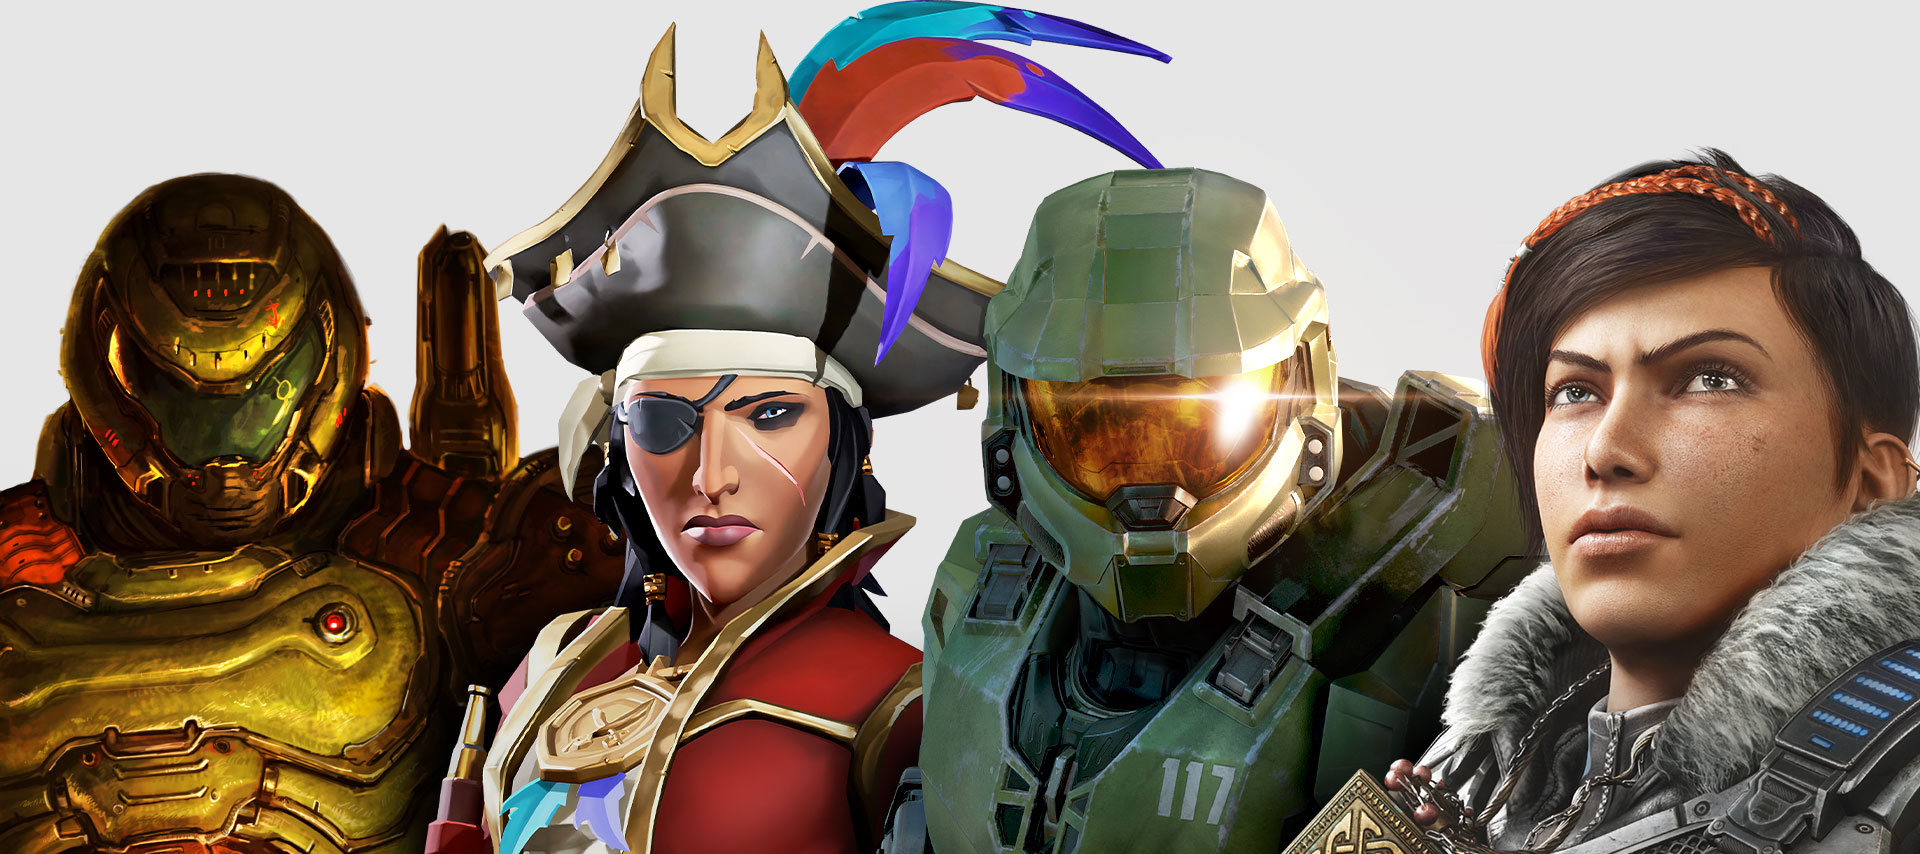 En samling av karaktärer kända från spel via Xbox Game Pass. Från vänster till höger: DOOM Eternal, Sea of Thieves, Halo: Infinite och Gears 5.